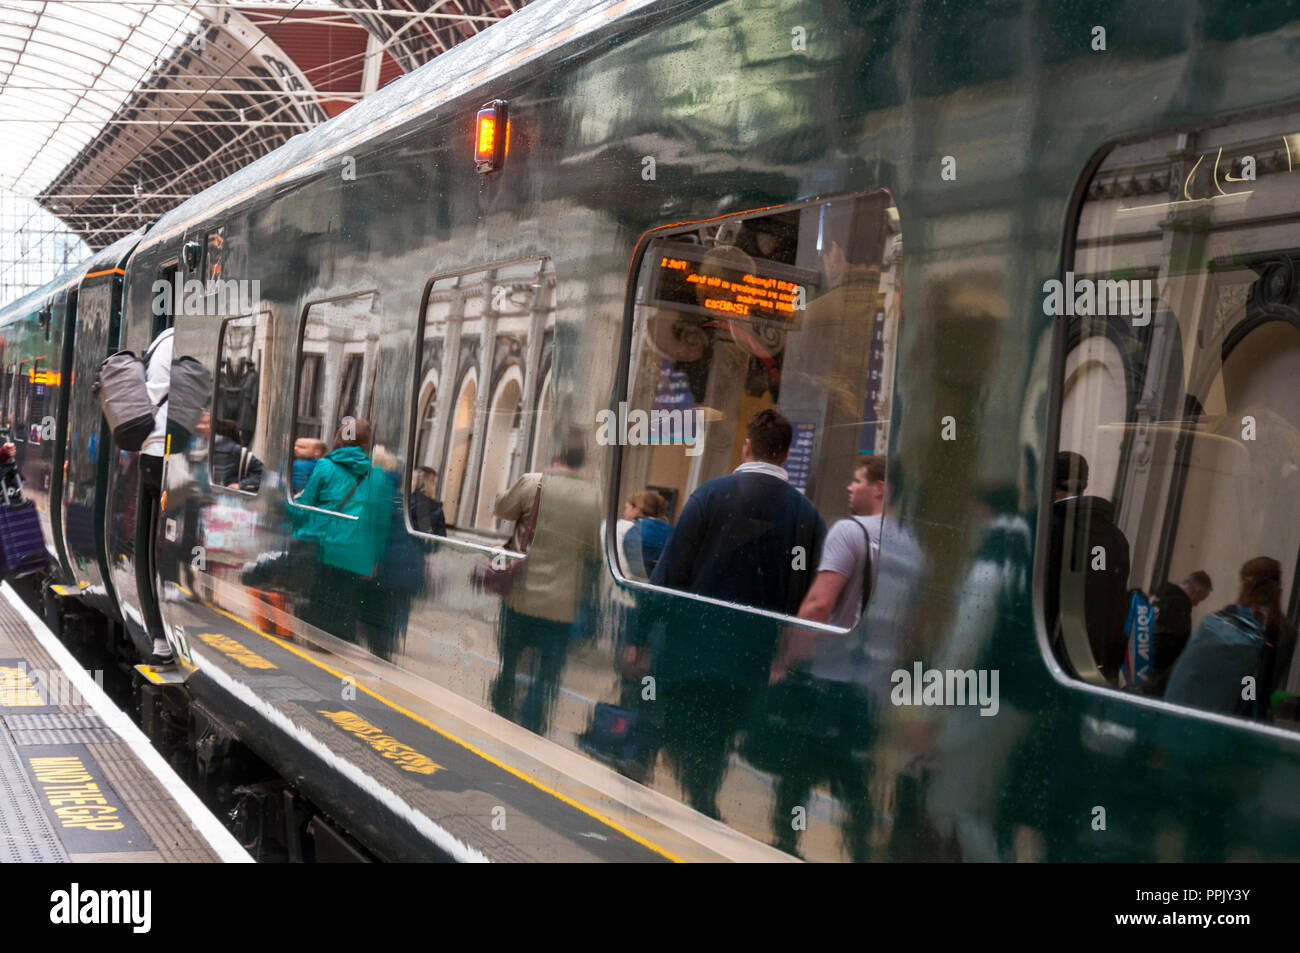 Reflexionen von Fluggästen in einer GWR Zug am Bahnhof Paddington, London, Großbritannien Stockfoto